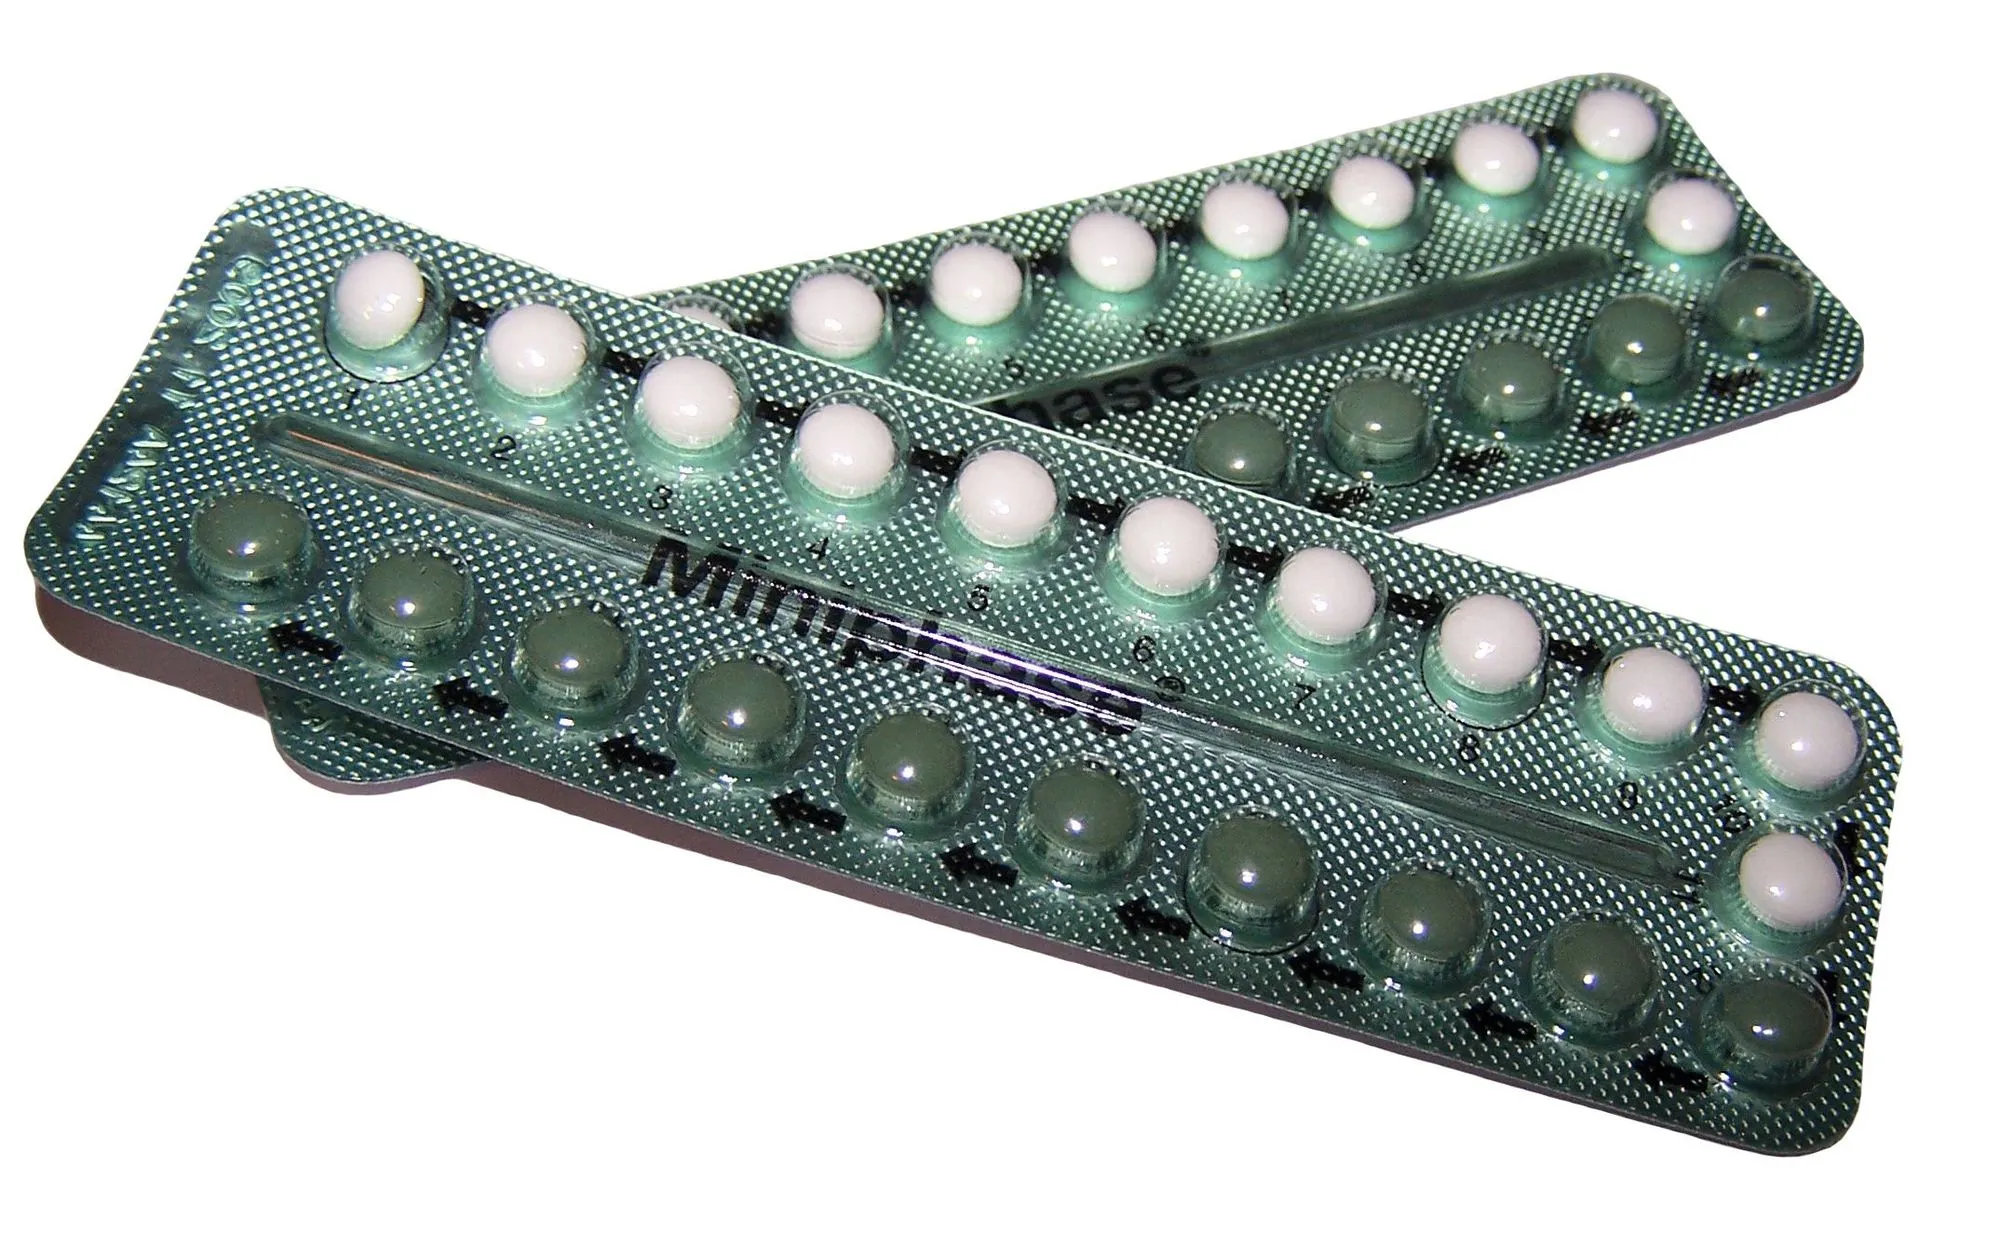 Plaquettes de pilules contraceptives.